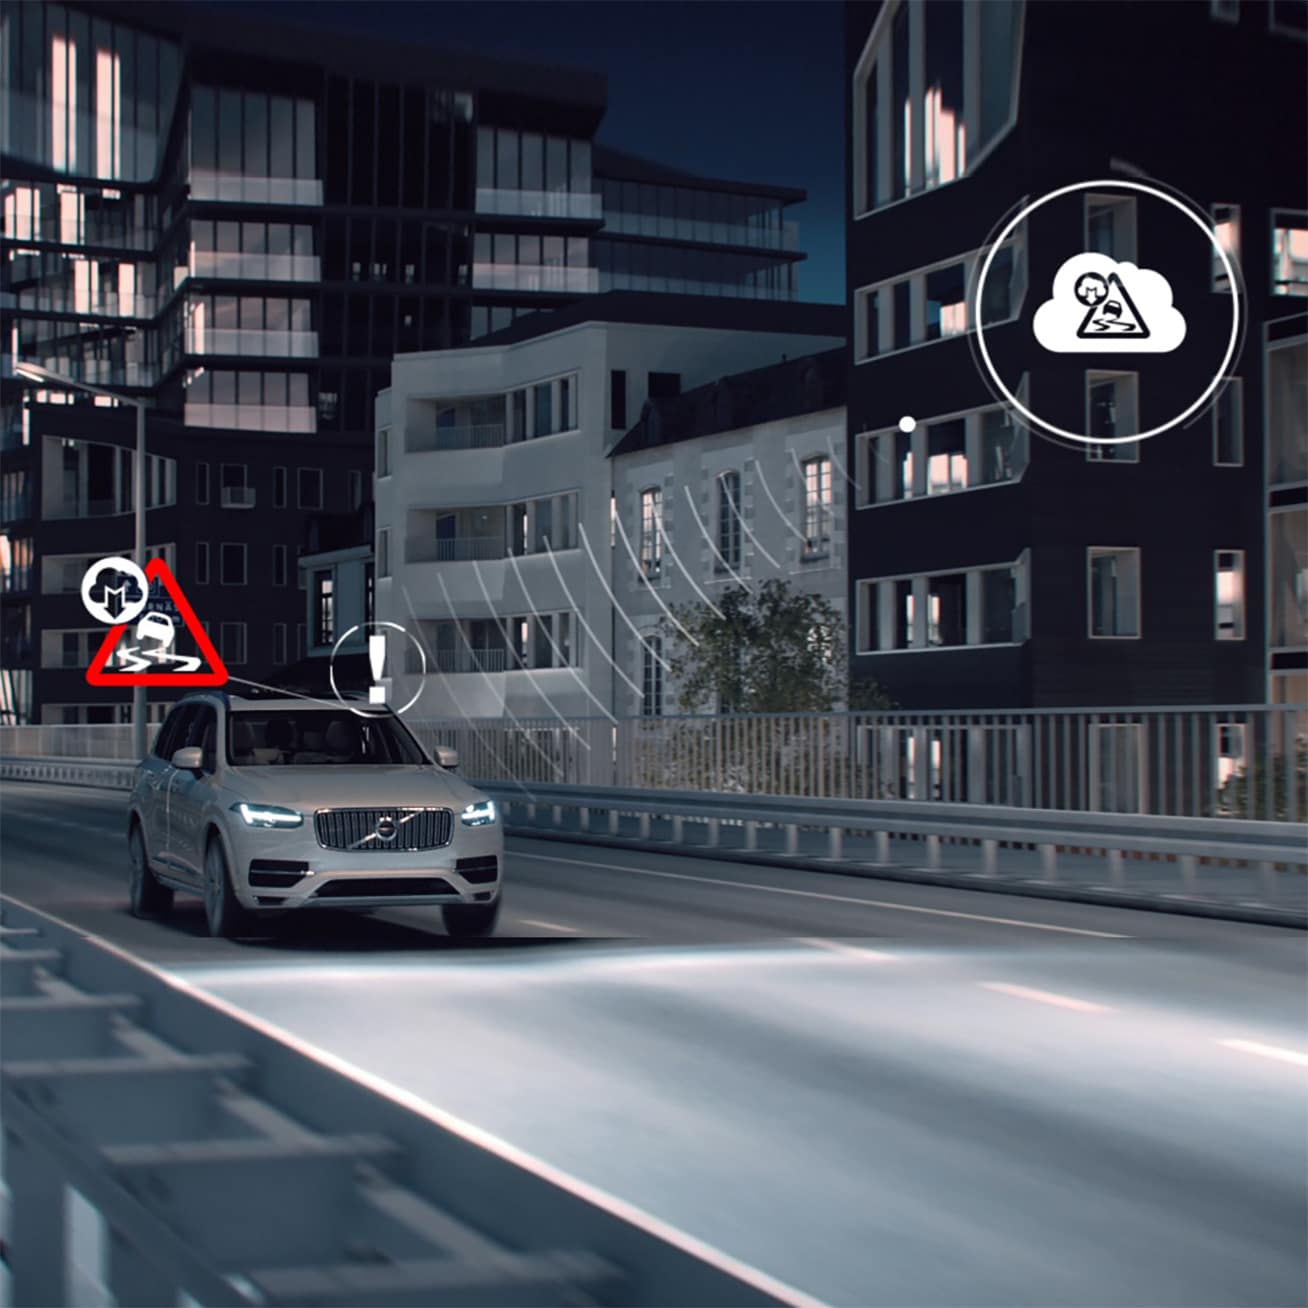 Volvo XC90 se vozi urbanim područjem noću, a preko je niz digitalnih ikona.